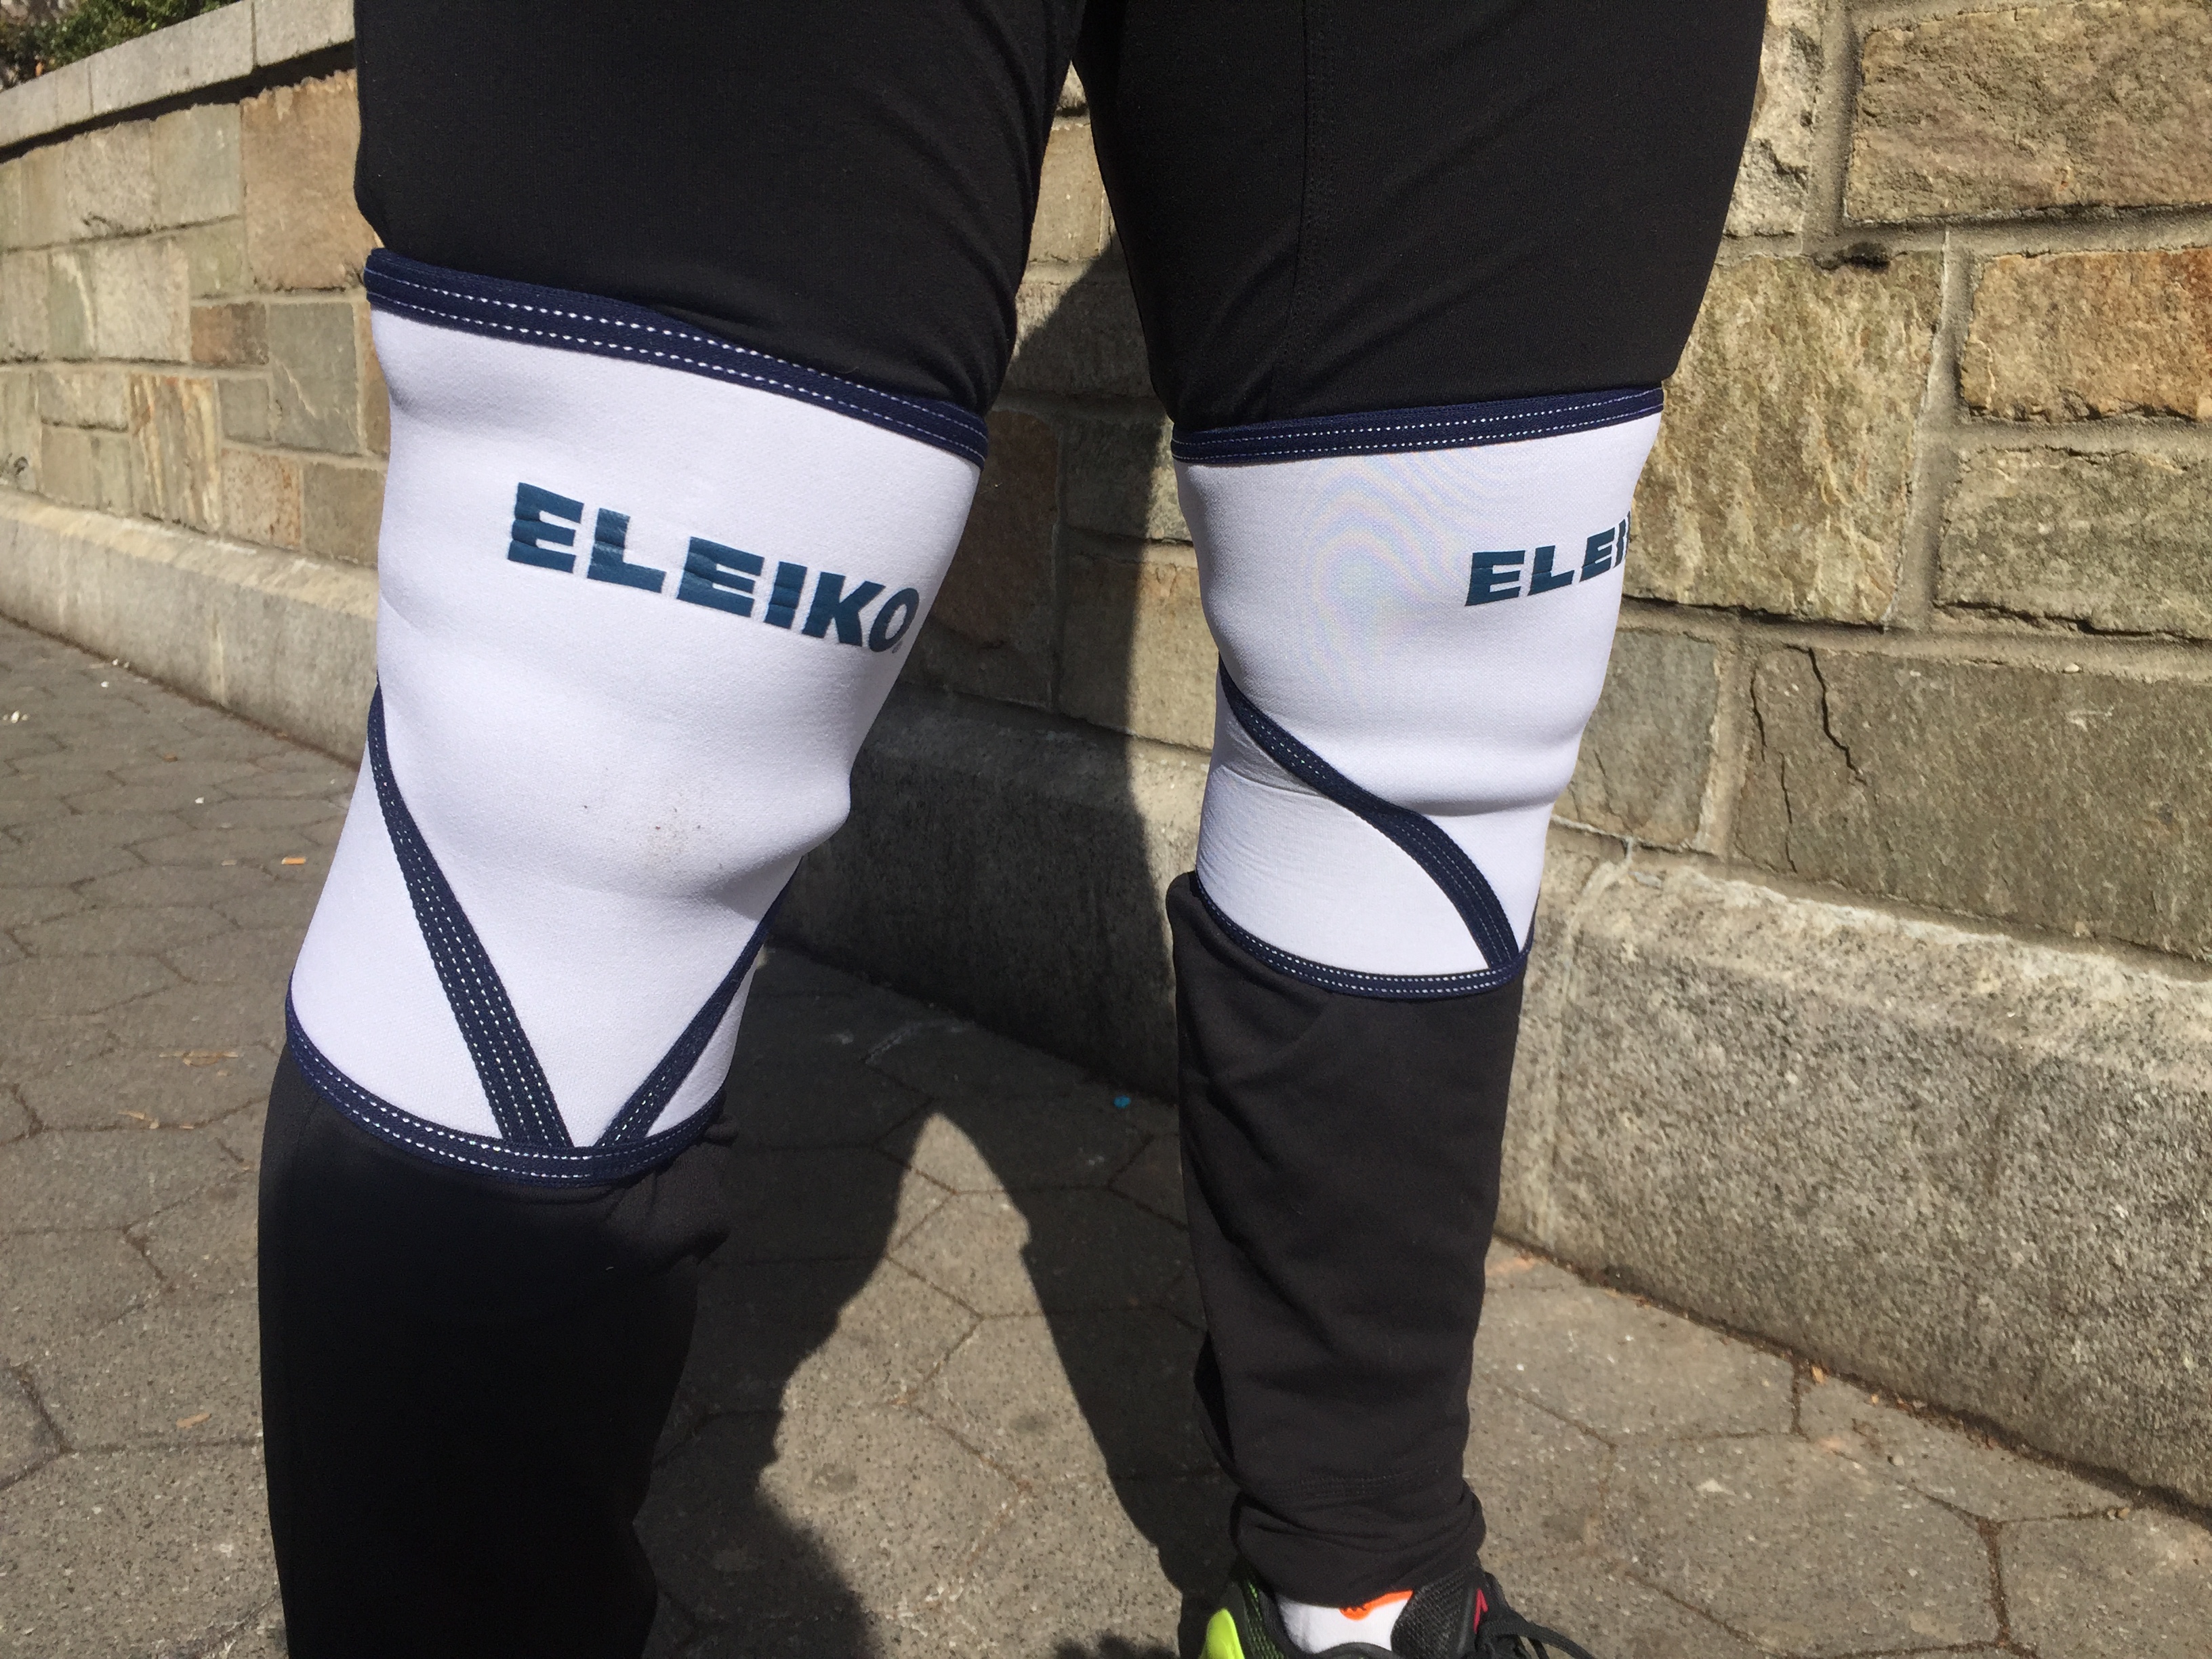 Eleiko 7mm Knee Sleeves Review